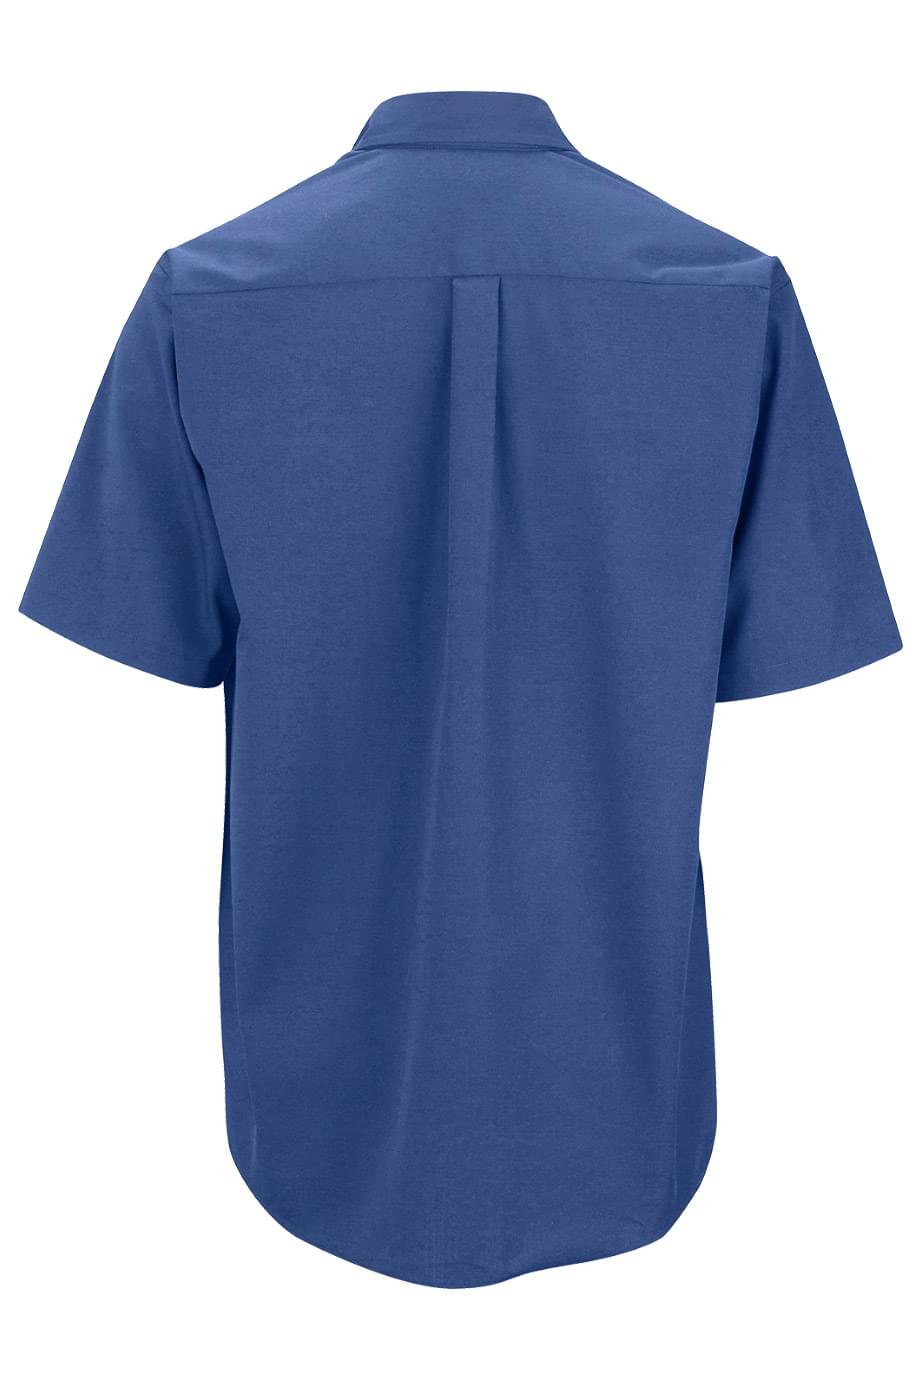 NetJets - Men's Easy Care Poplin Short Sleeve Shirt